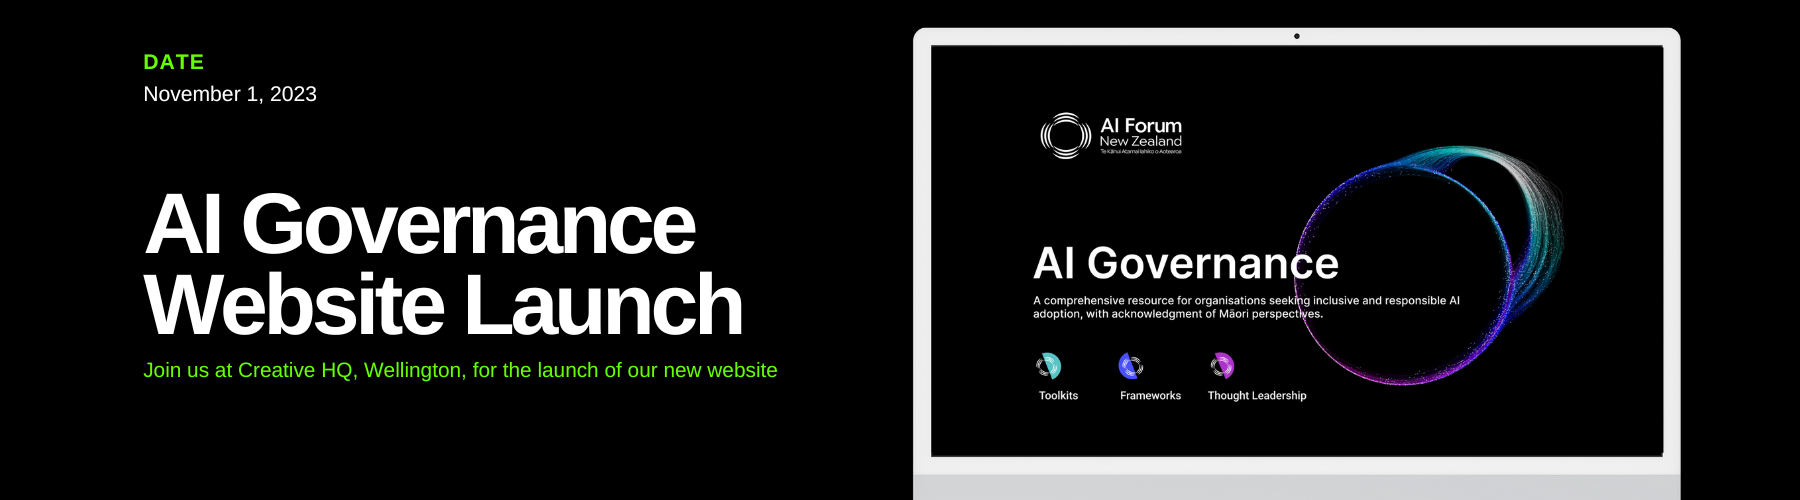 AIGovernance website launch